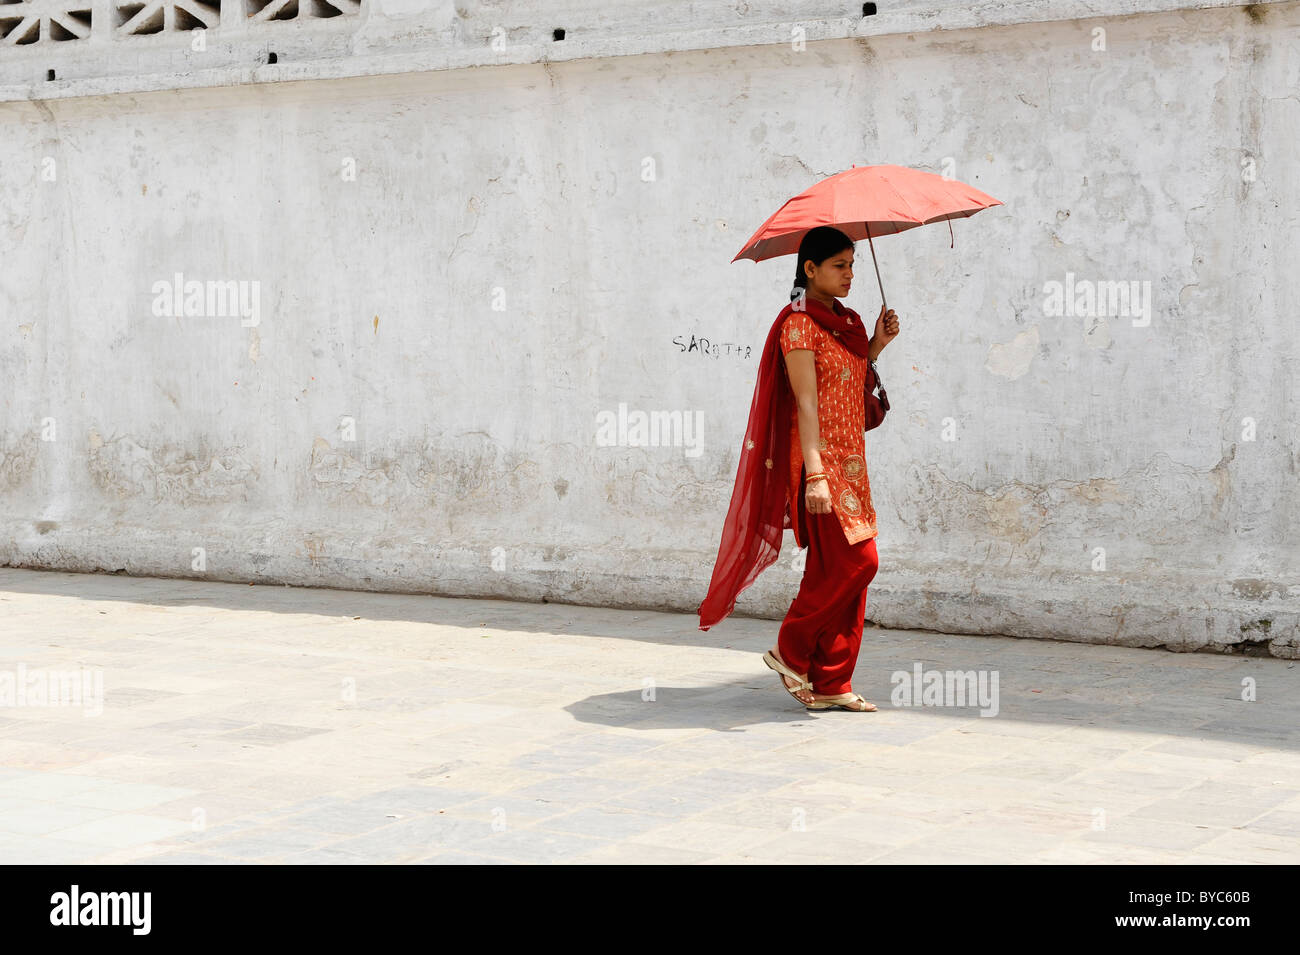 Dame népalaise de prendre une marche, holding umbrella pour l'ombre du soleil , la vie des populations ( l ) les Népalais, Katmandou, Népal Banque D'Images